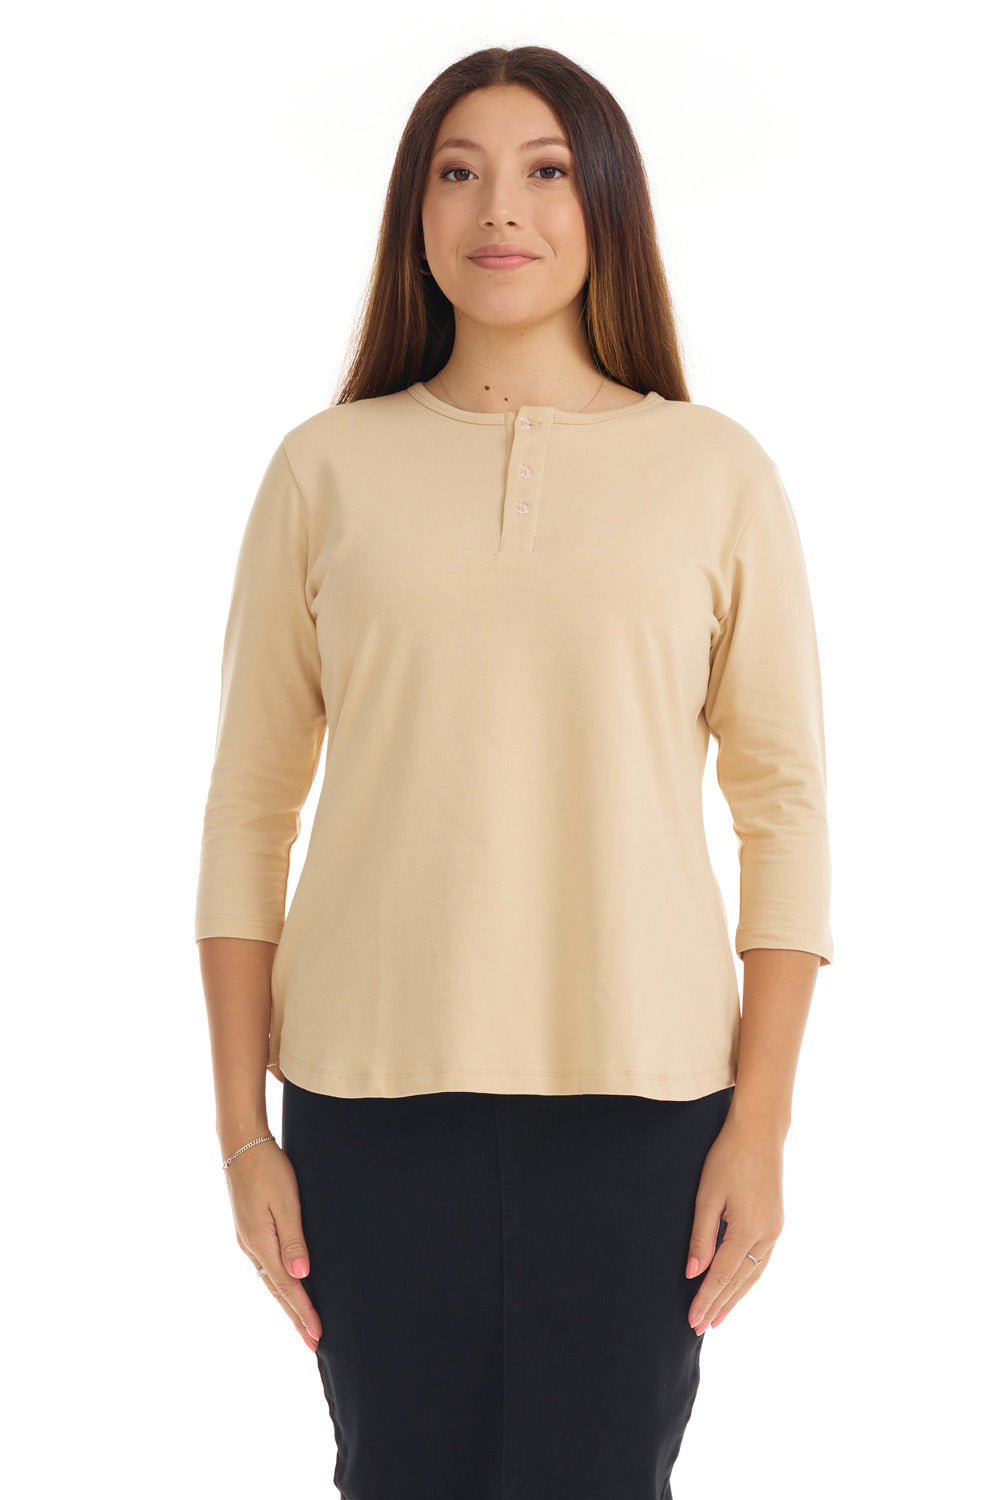 tan 3/4 sleeve henley shirt for women